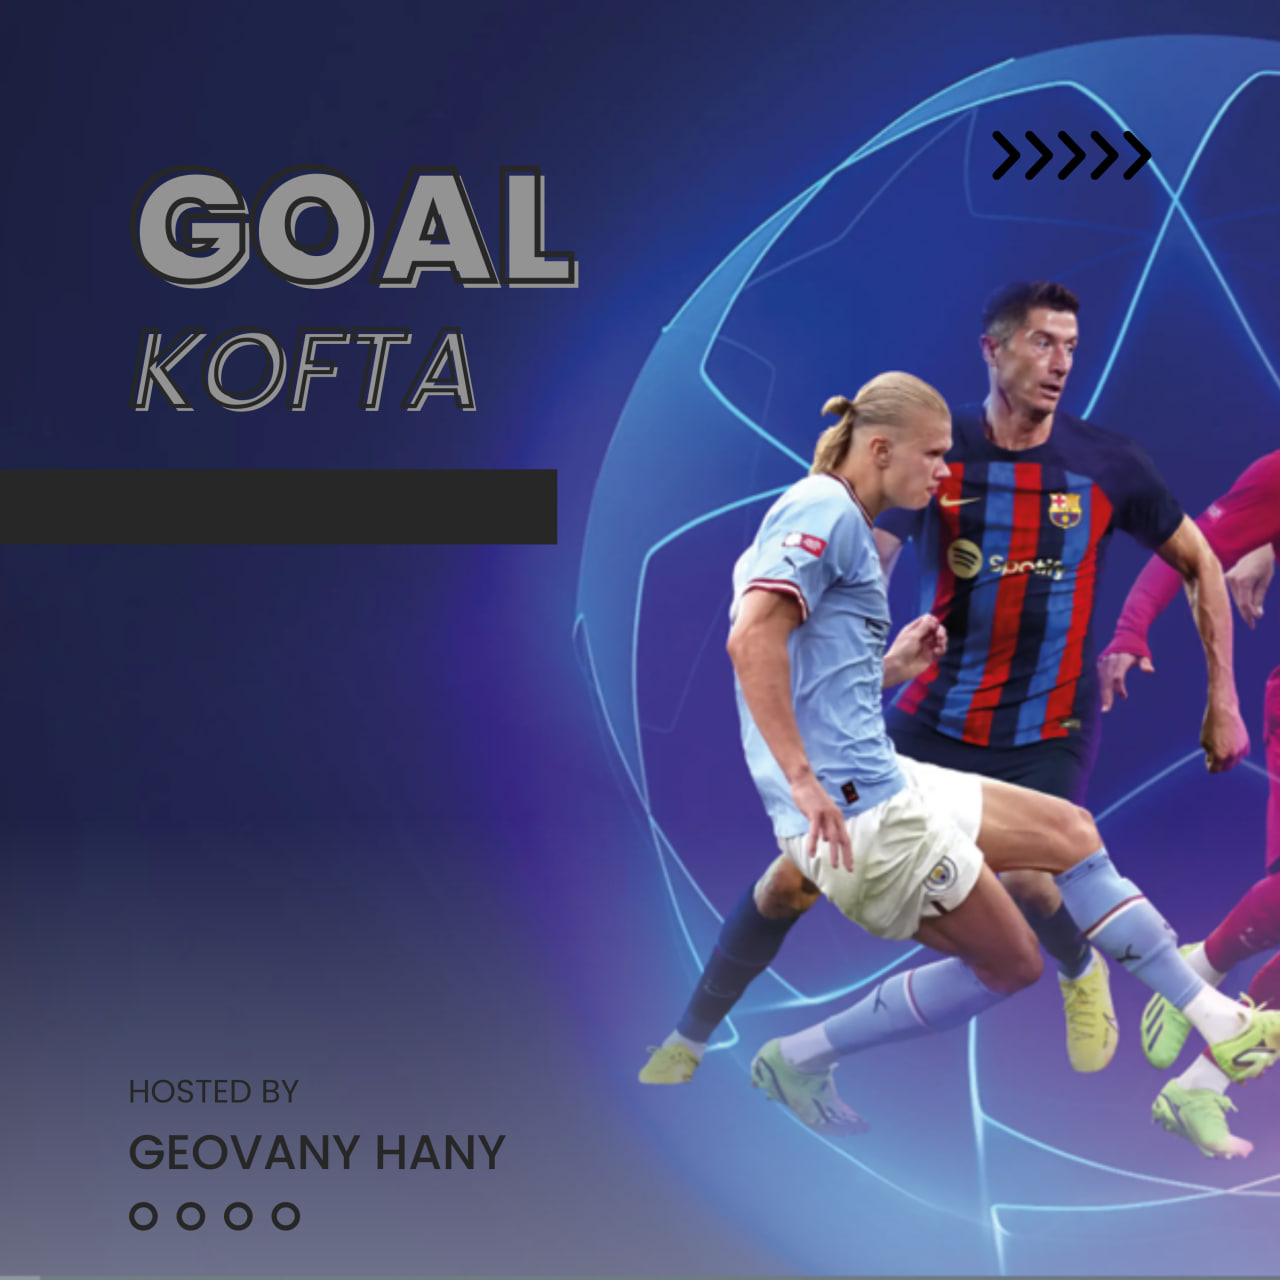 Goal Kofta